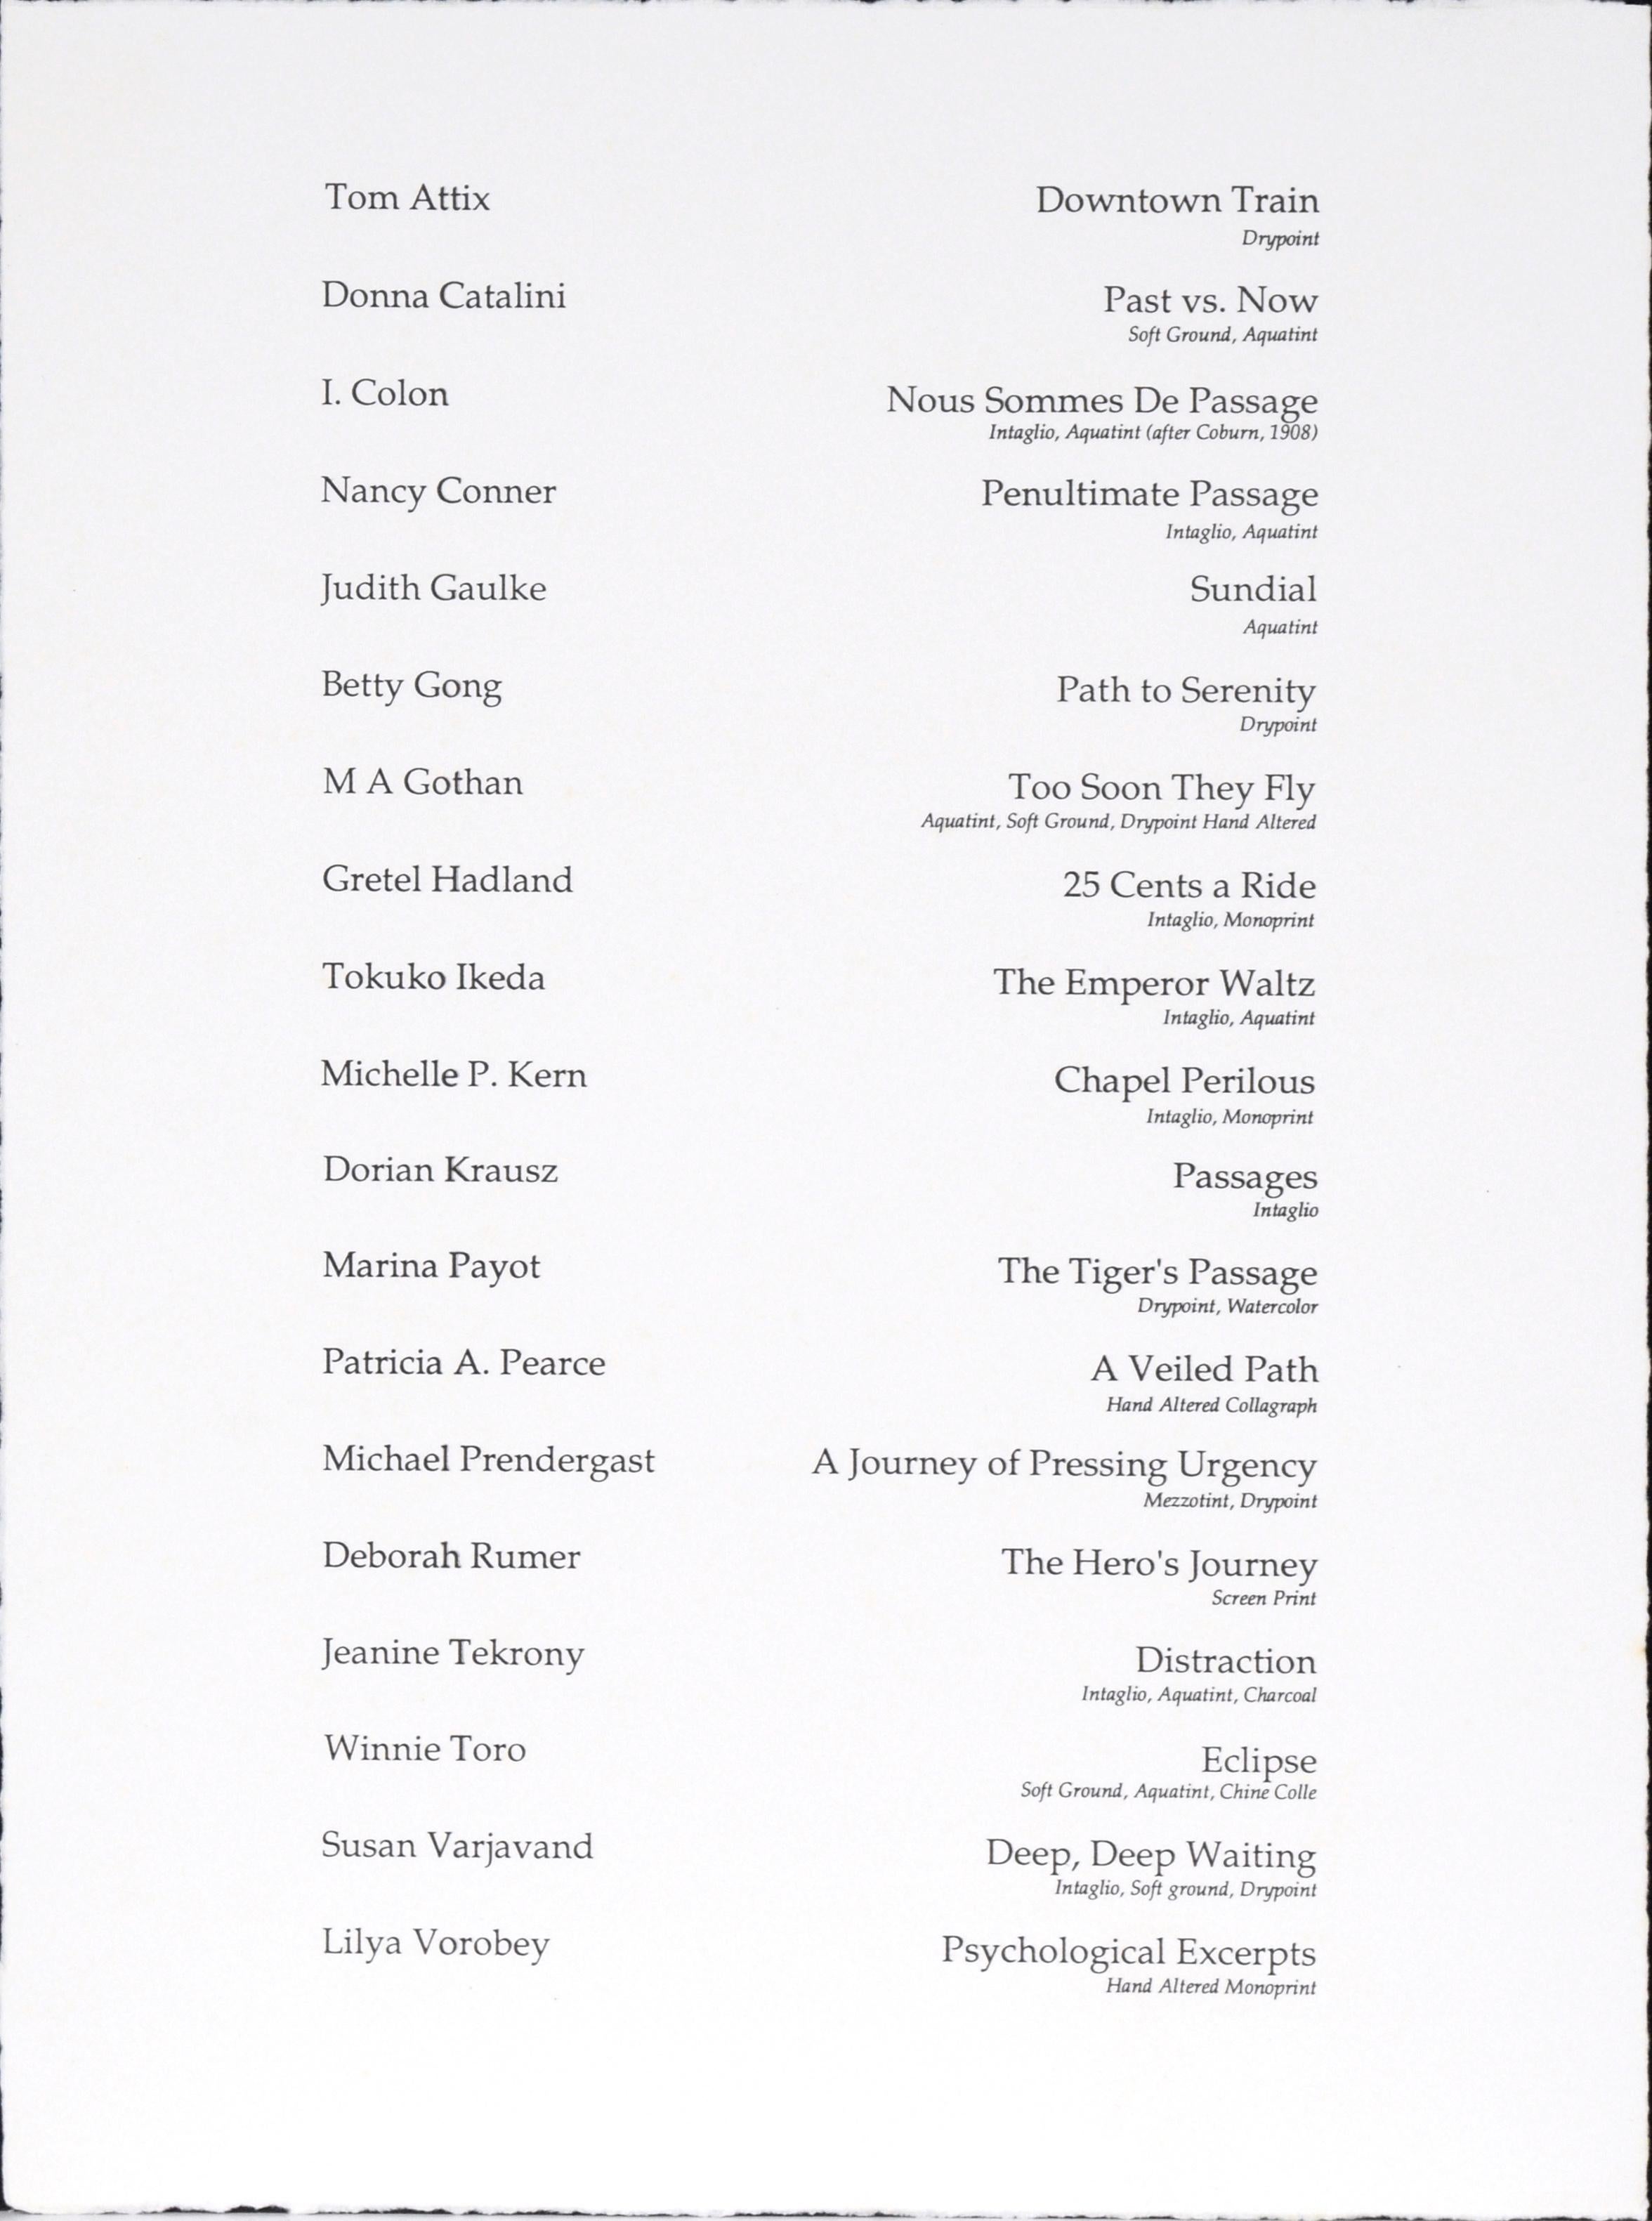 Passages - Eine Suite von 16 Drucken von Patricia Pearce und anderen Künstlern – Print von Patricia A Pearce